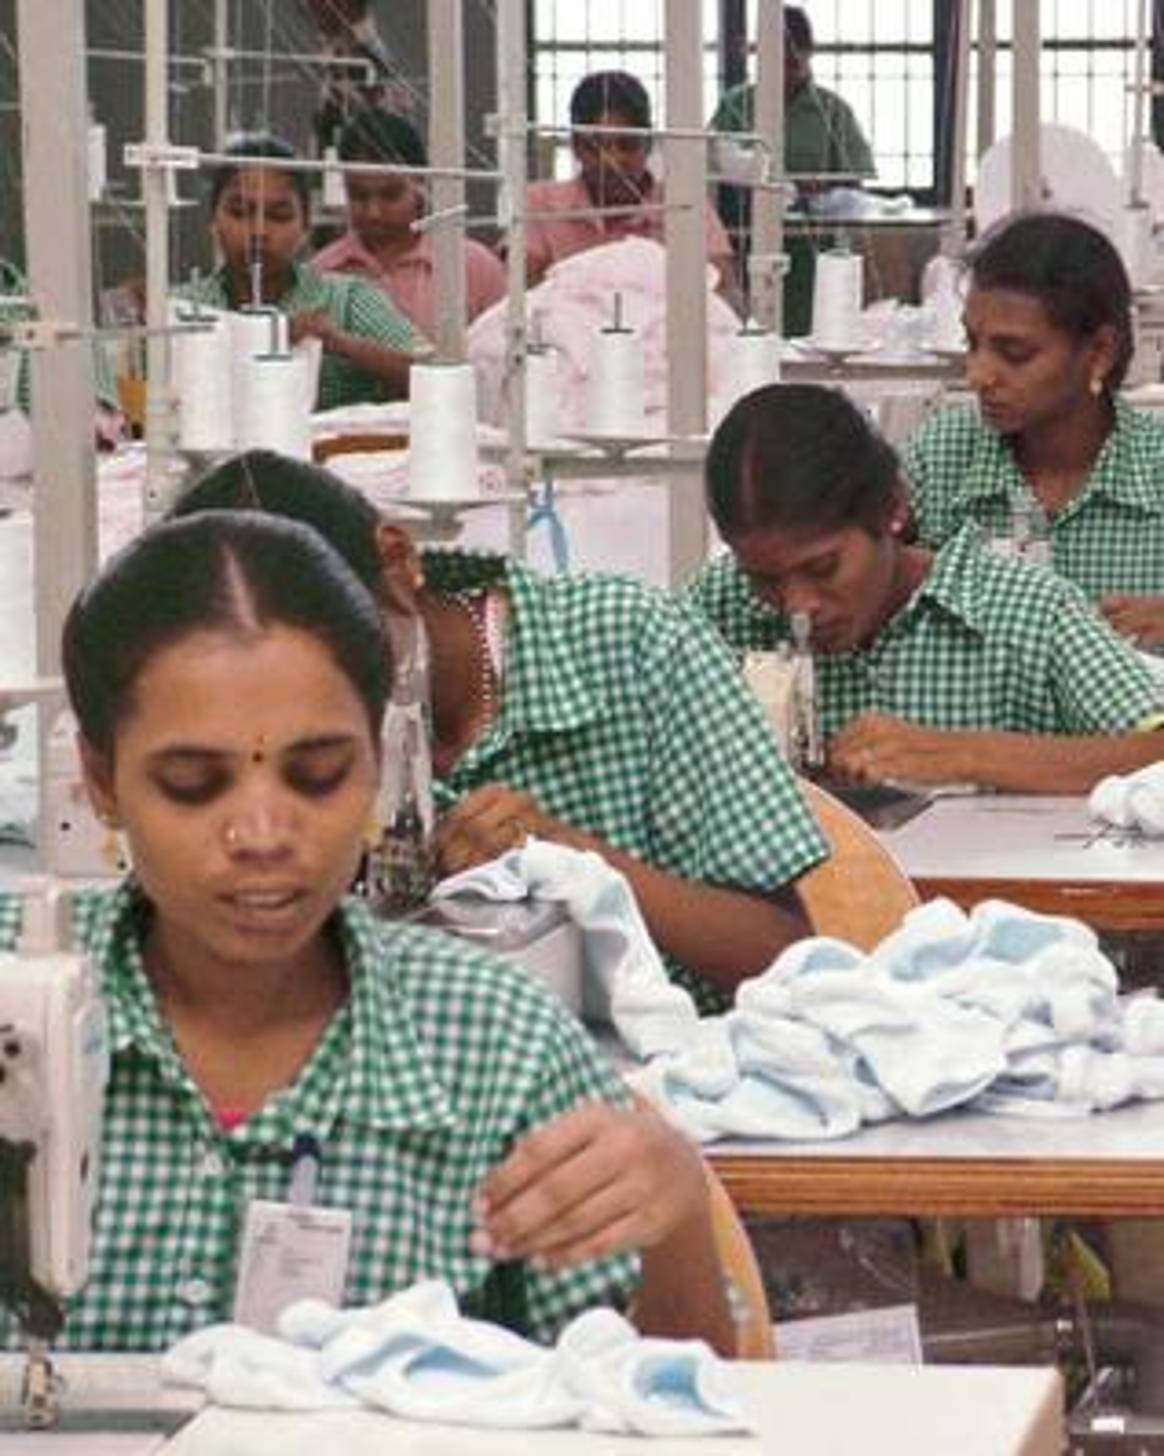 Gobierno de Bangladesh dice que subirá salarios de textiles